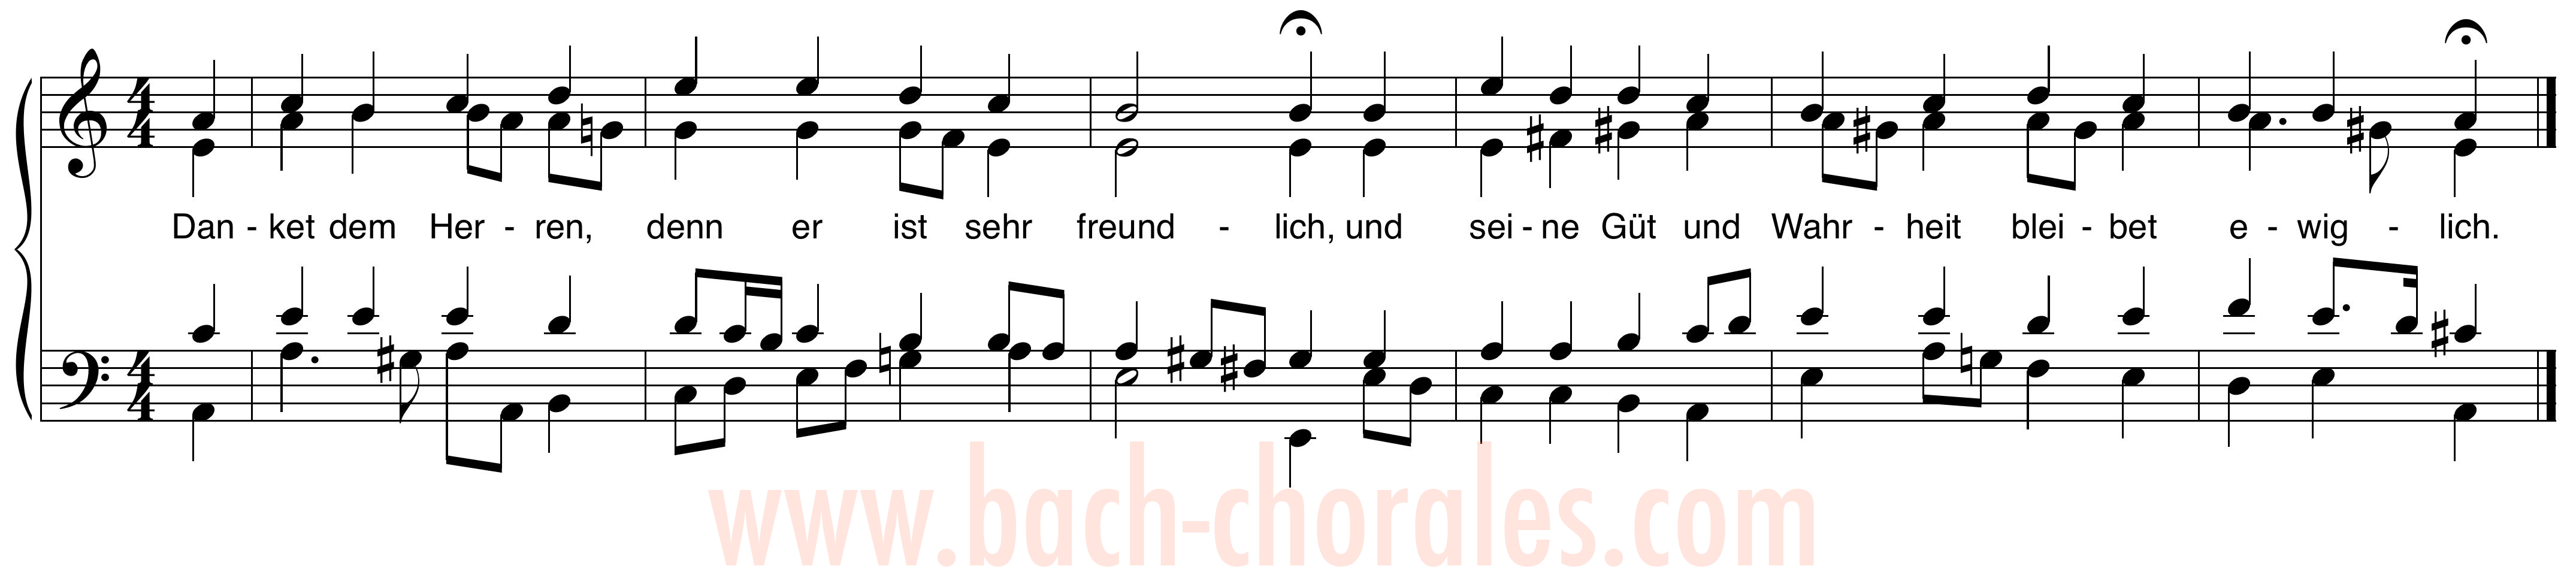 notenbeeld BWV 286 op https://www.bach-chorales.com/